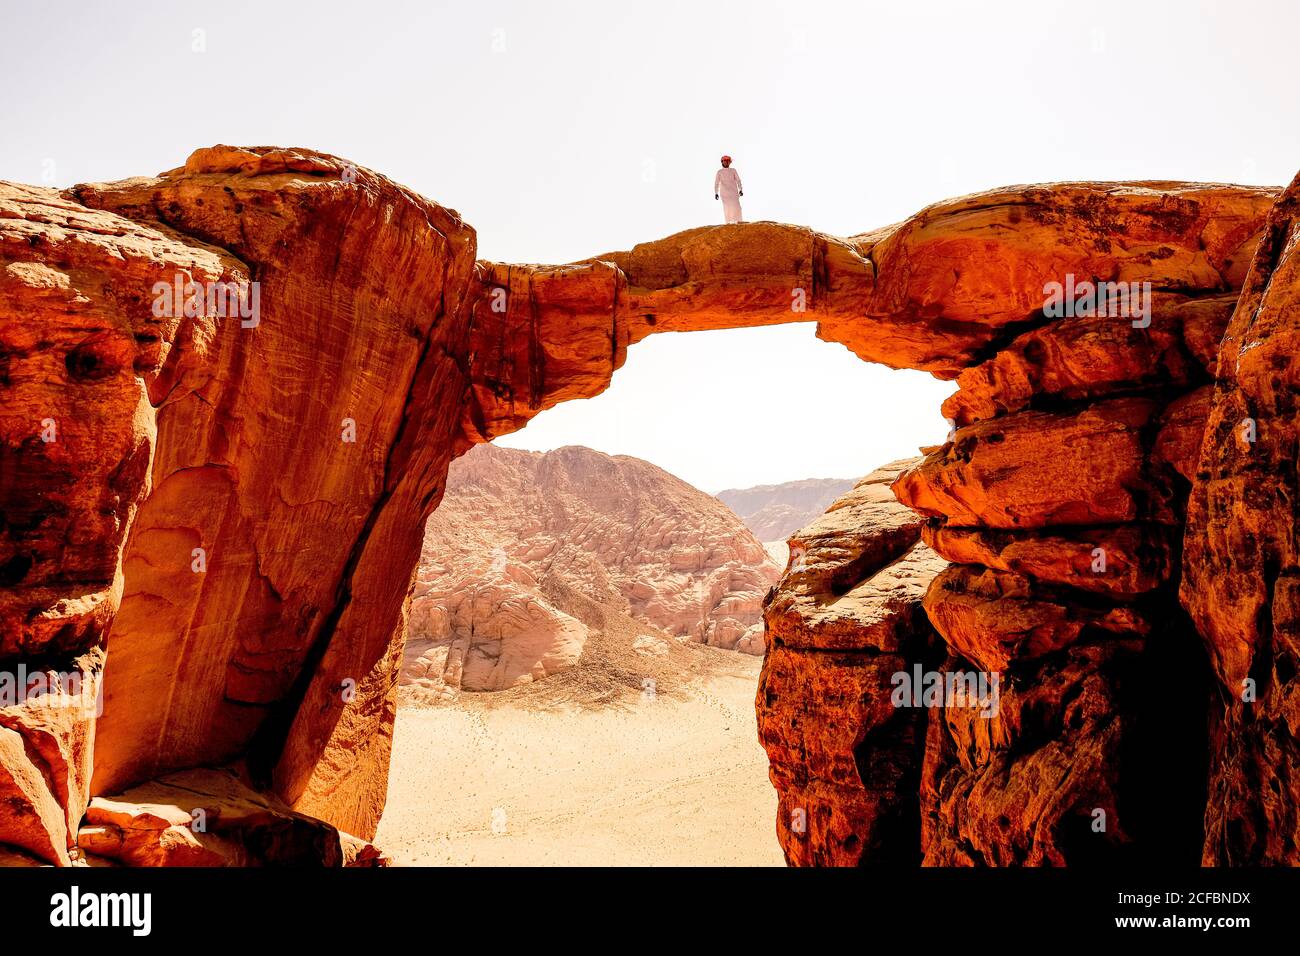 Un bédouin se dresse au sommet d'une arche de roche à Wadi Rum, en Jordanie Banque D'Images